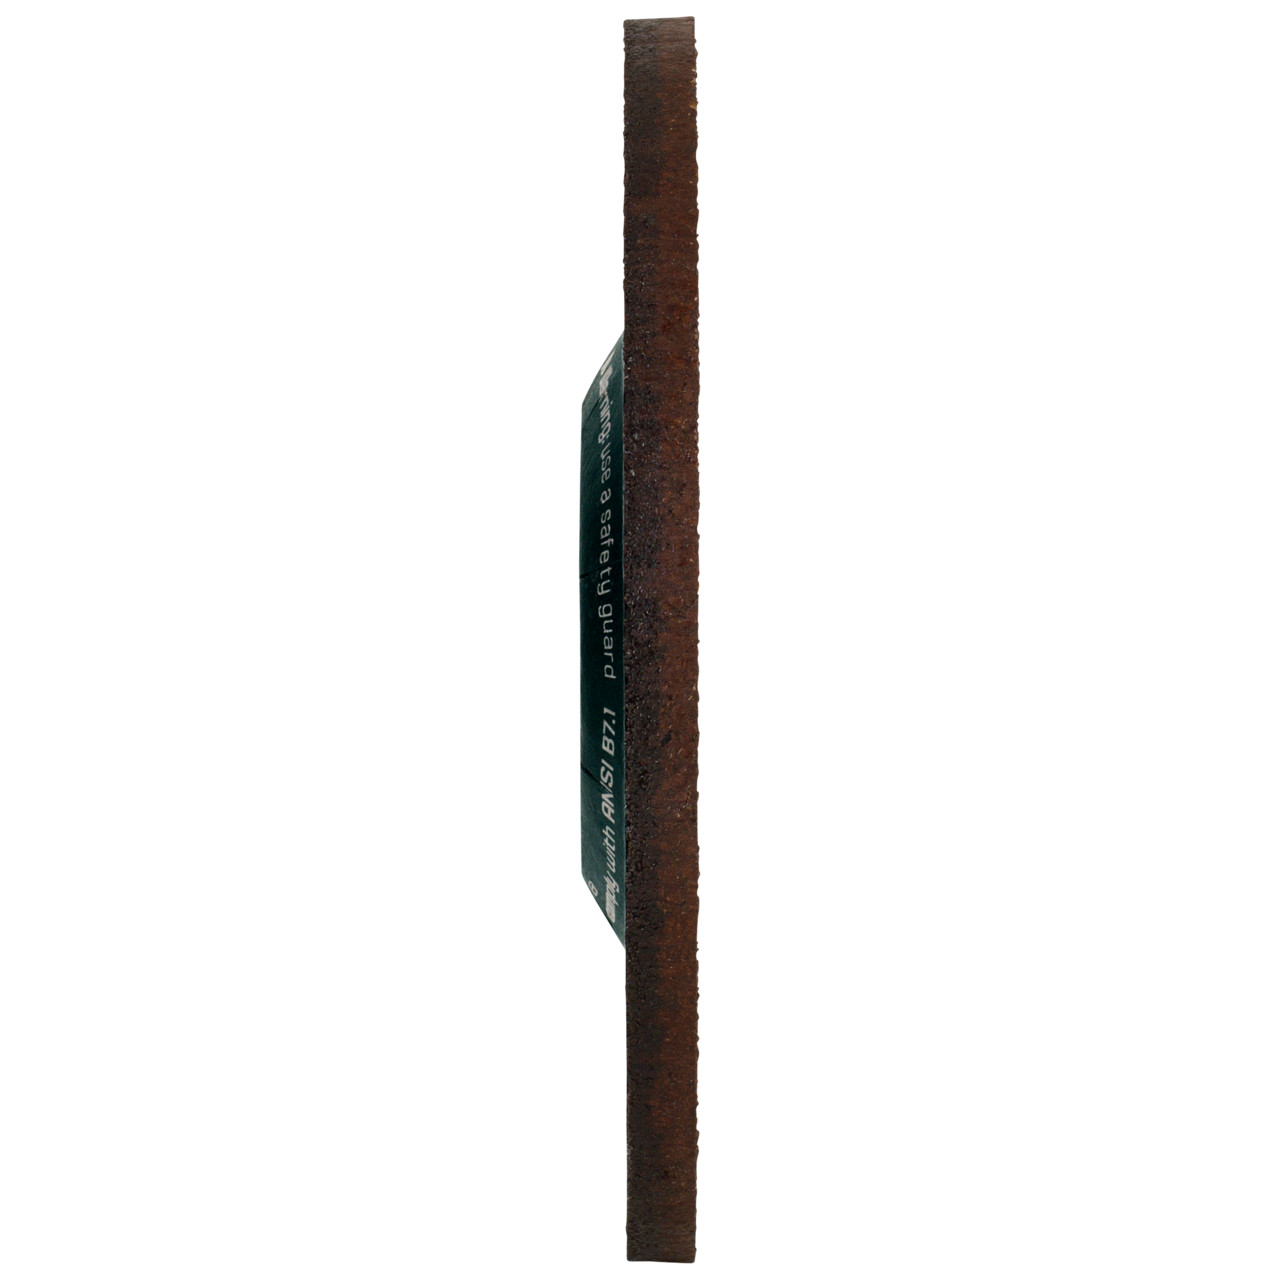 Tyrolit Karhennuslevy DxUxH 150x7x22,23 CERABOND X teräkselle ja ruostumattomalle teräkselle